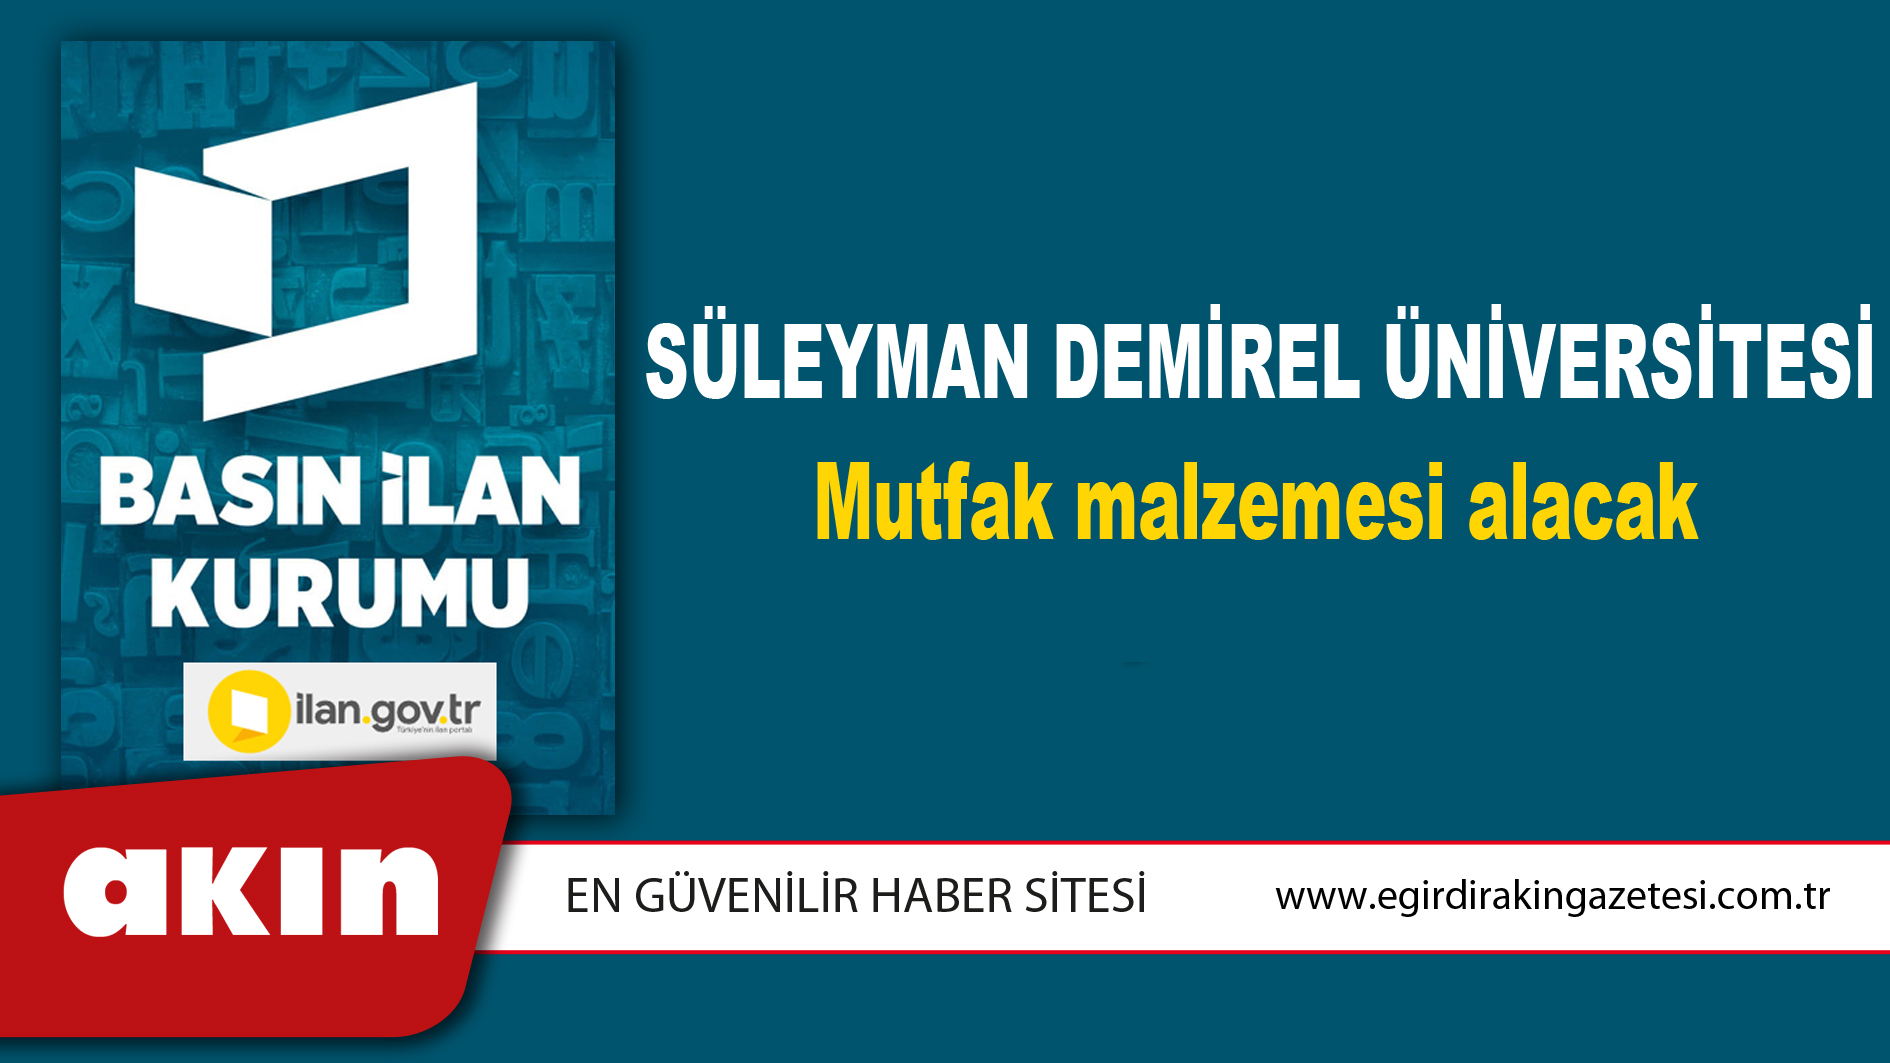 Süleyman Demirel Üniversitesi Mutfak malzemesi alacak